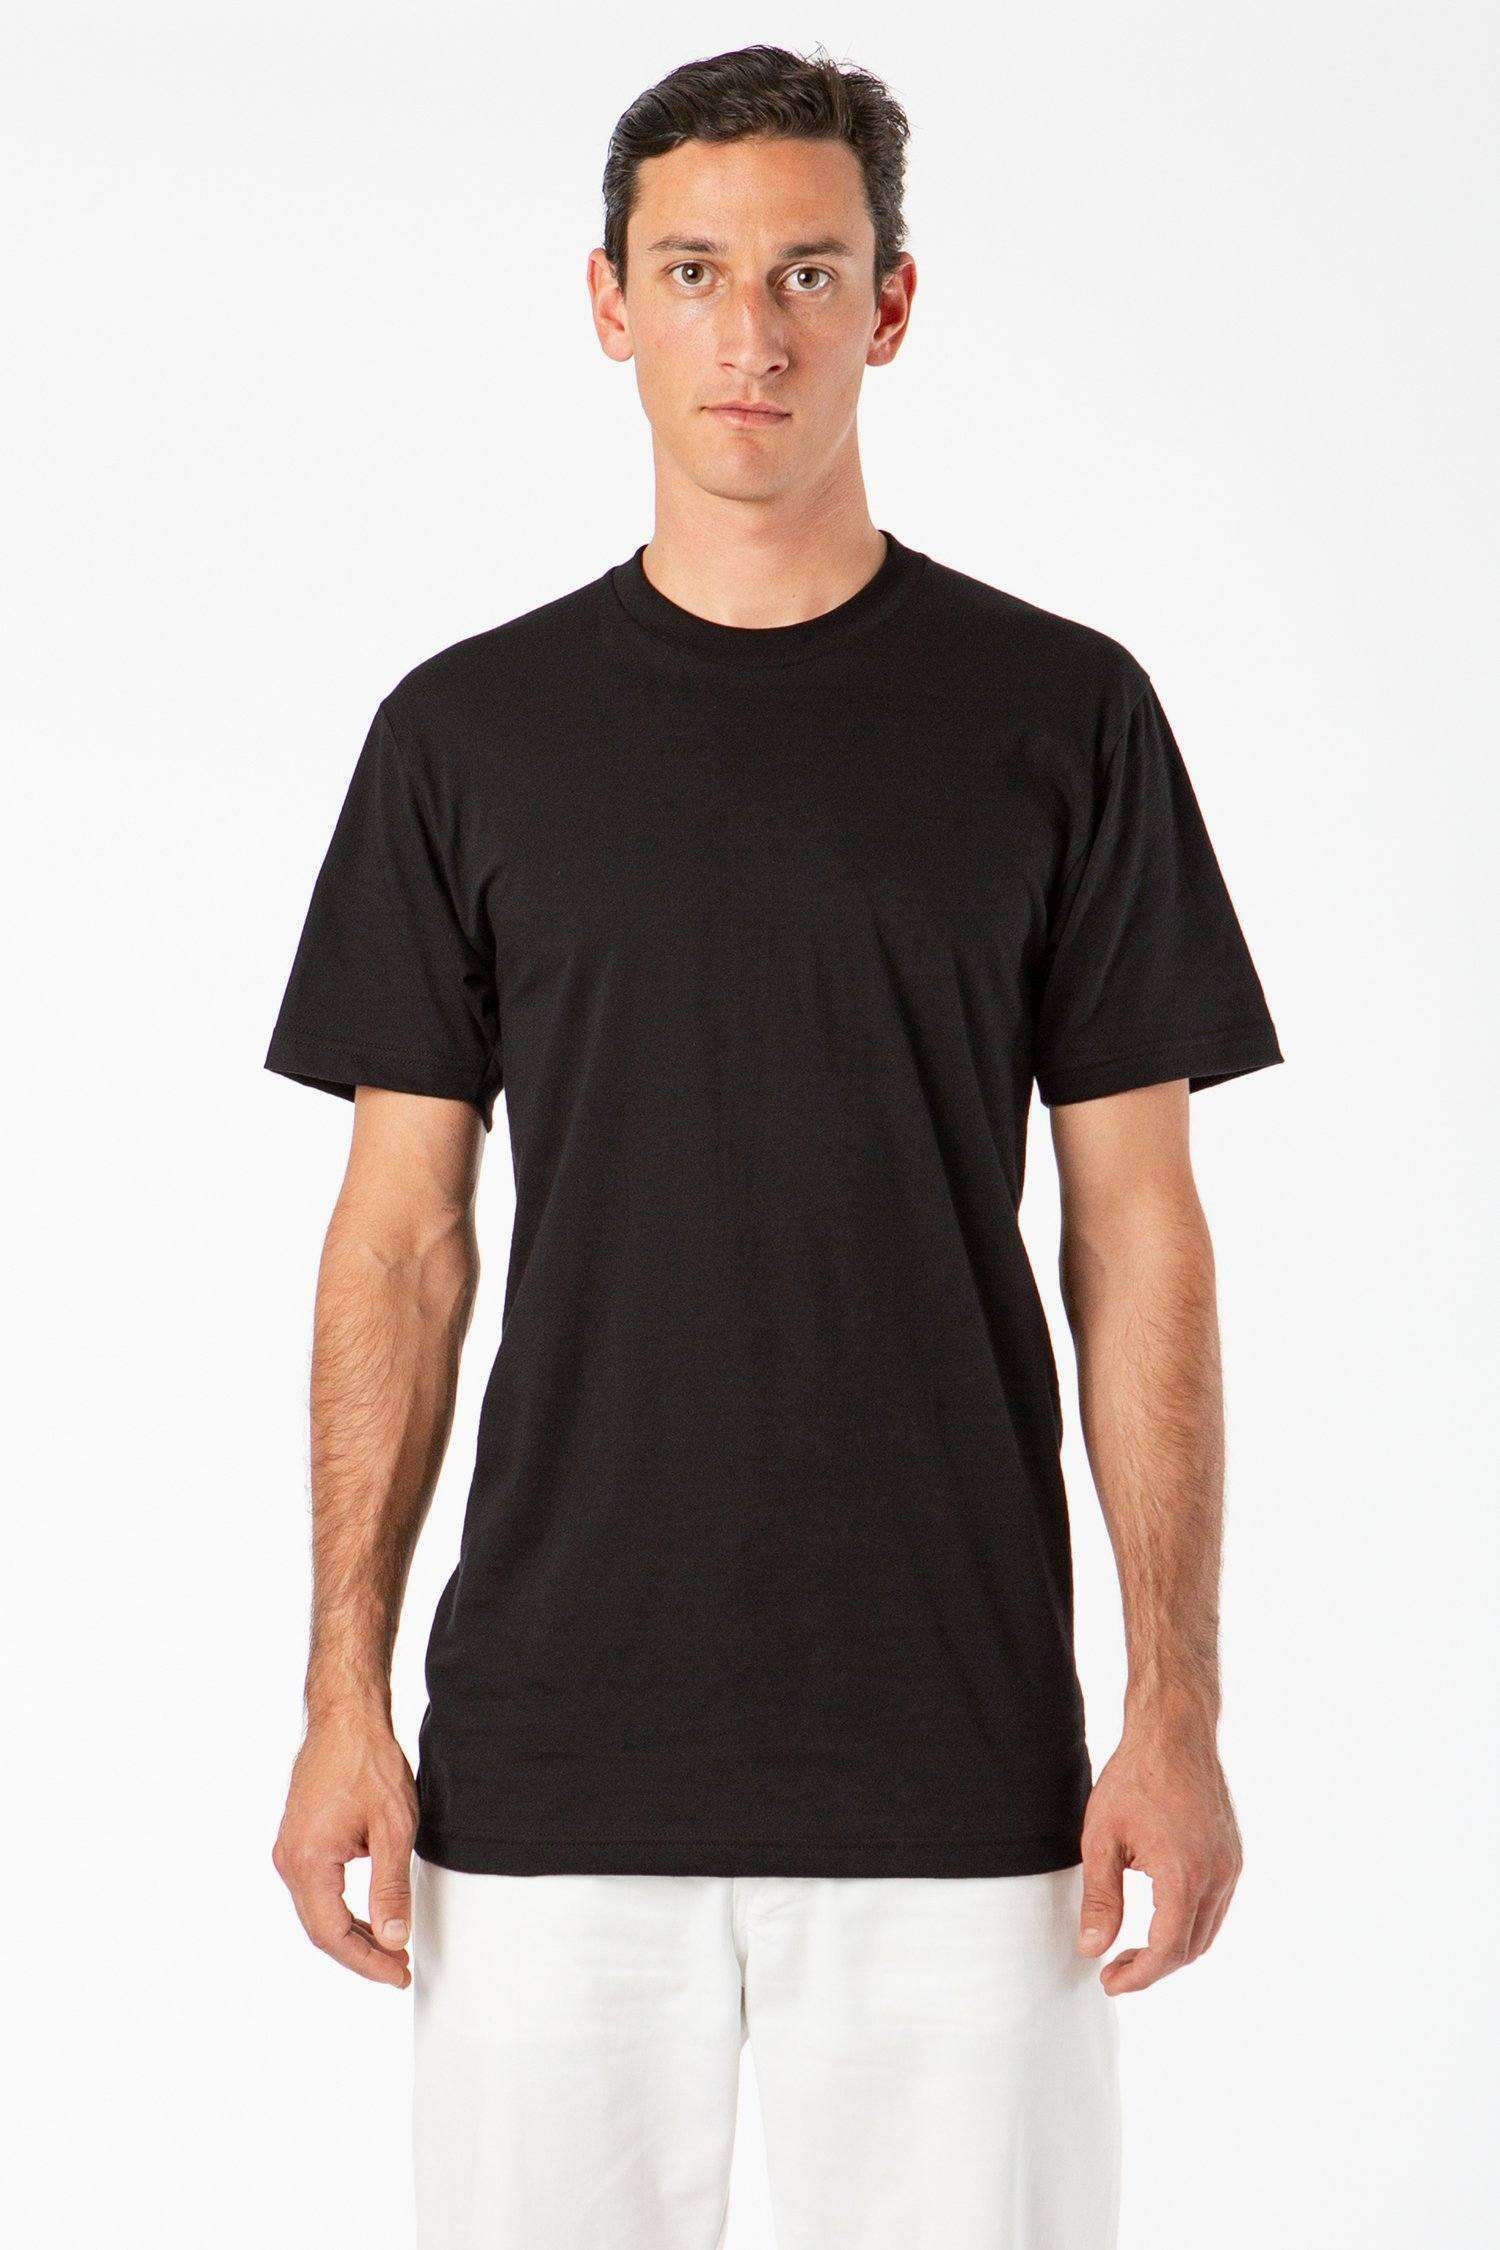 TL20001 - Fine Jersey Crew Neck Tall Tee T-Shirt Los Angeles Apparel Black XS 